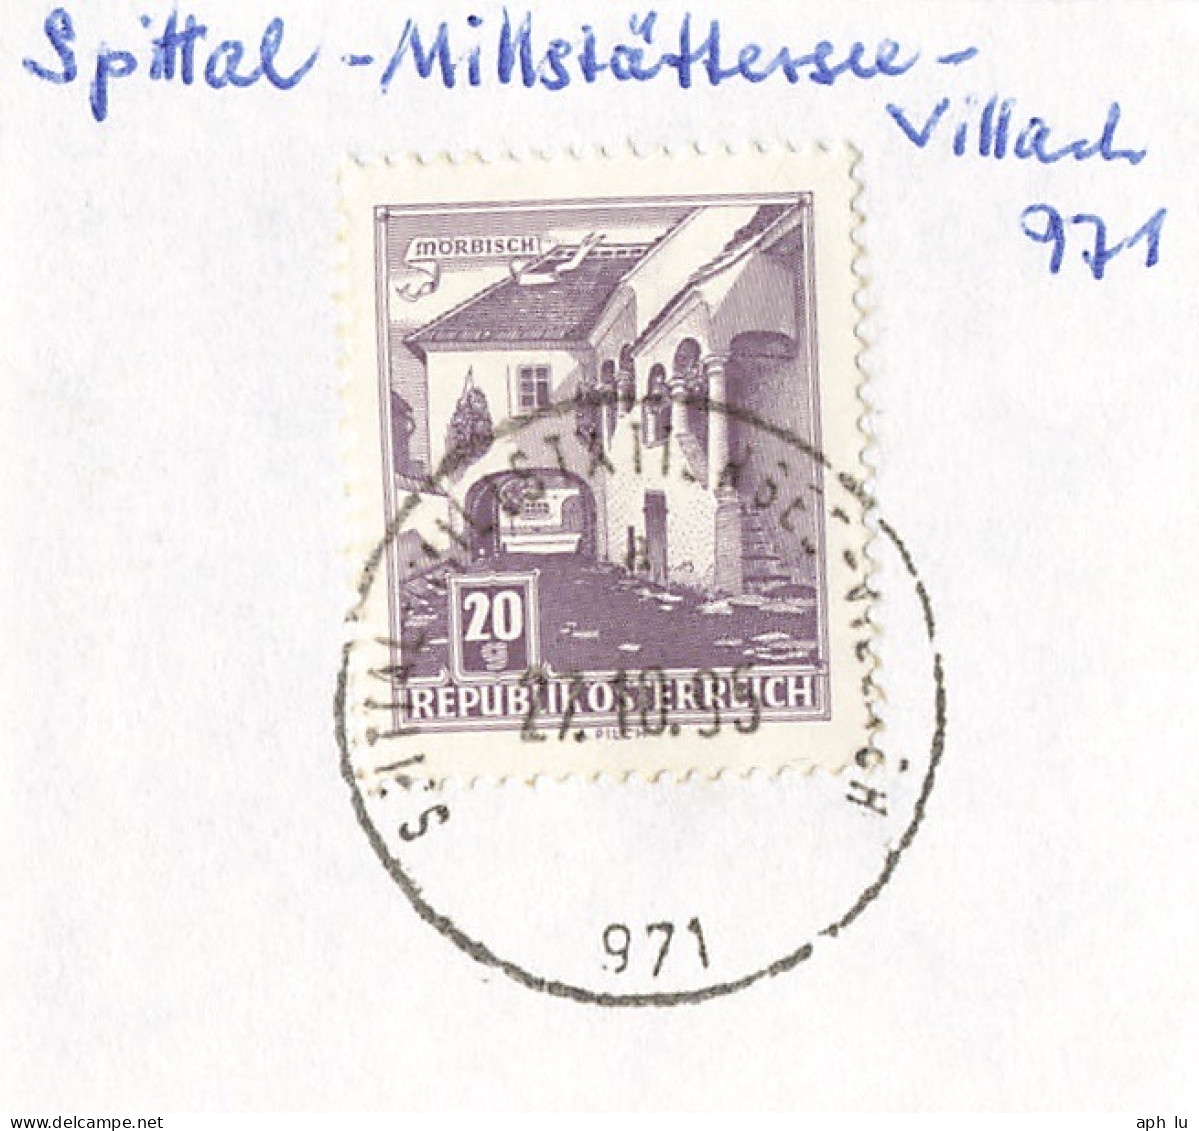 Bahnpost (R.P.O./T.P.O) Spittal-Millstättersee-Villach [Ausschnitt] (AD3109) - Briefe U. Dokumente